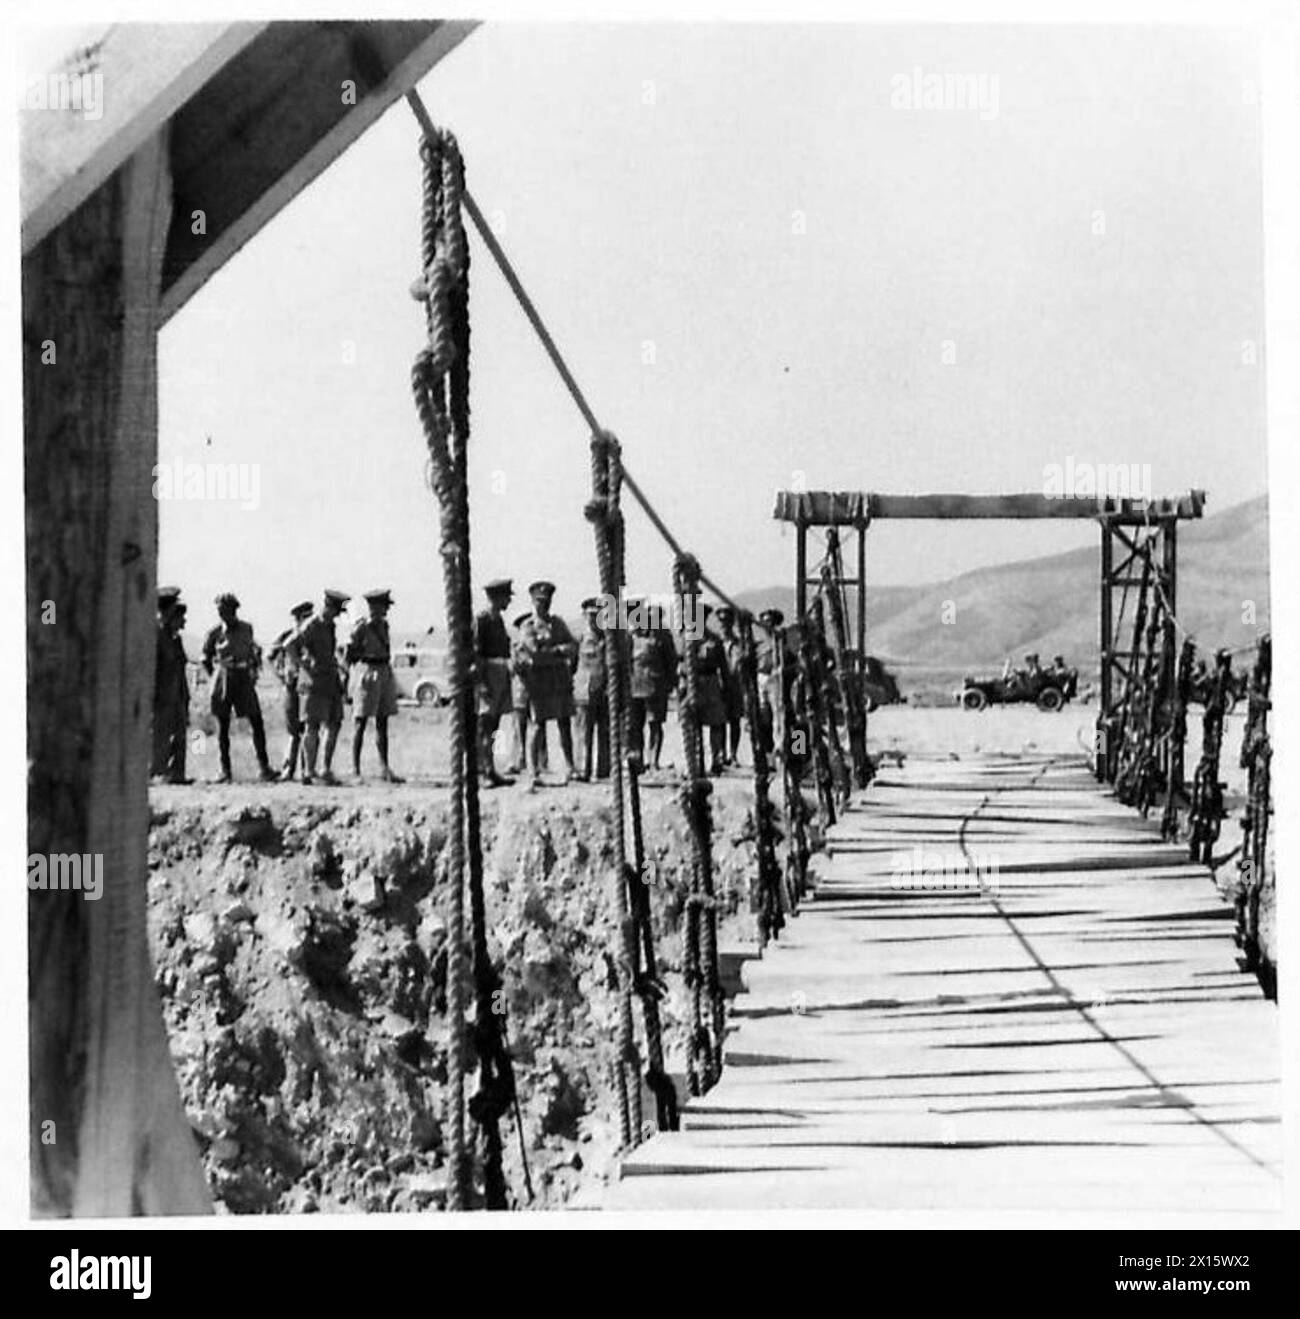 LE MARÉCHAL ALEXANDER VISITE LA GRÈCE - le maréchal Alexander Seen inspectant un pont construit par les ingénieurs grecs de l'armée britannique Banque D'Images